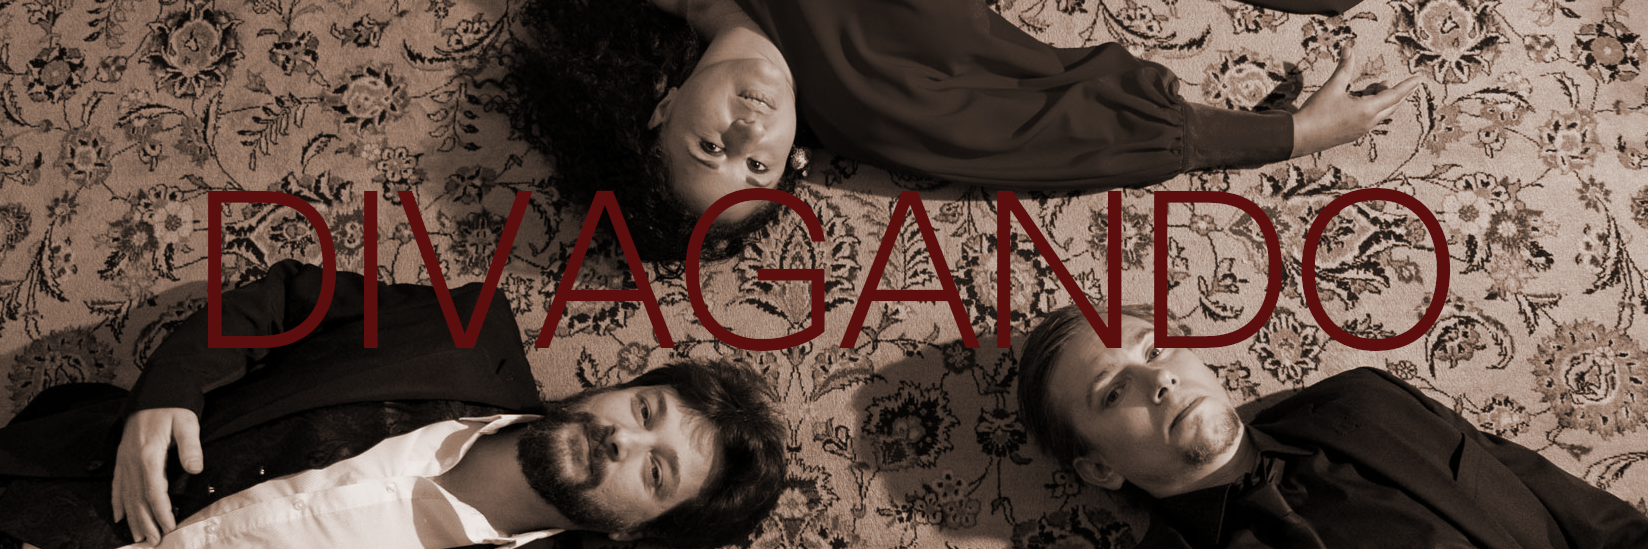 Divagando, groupe de musique Latino en représentation à Hérault - photo de couverture n° 1